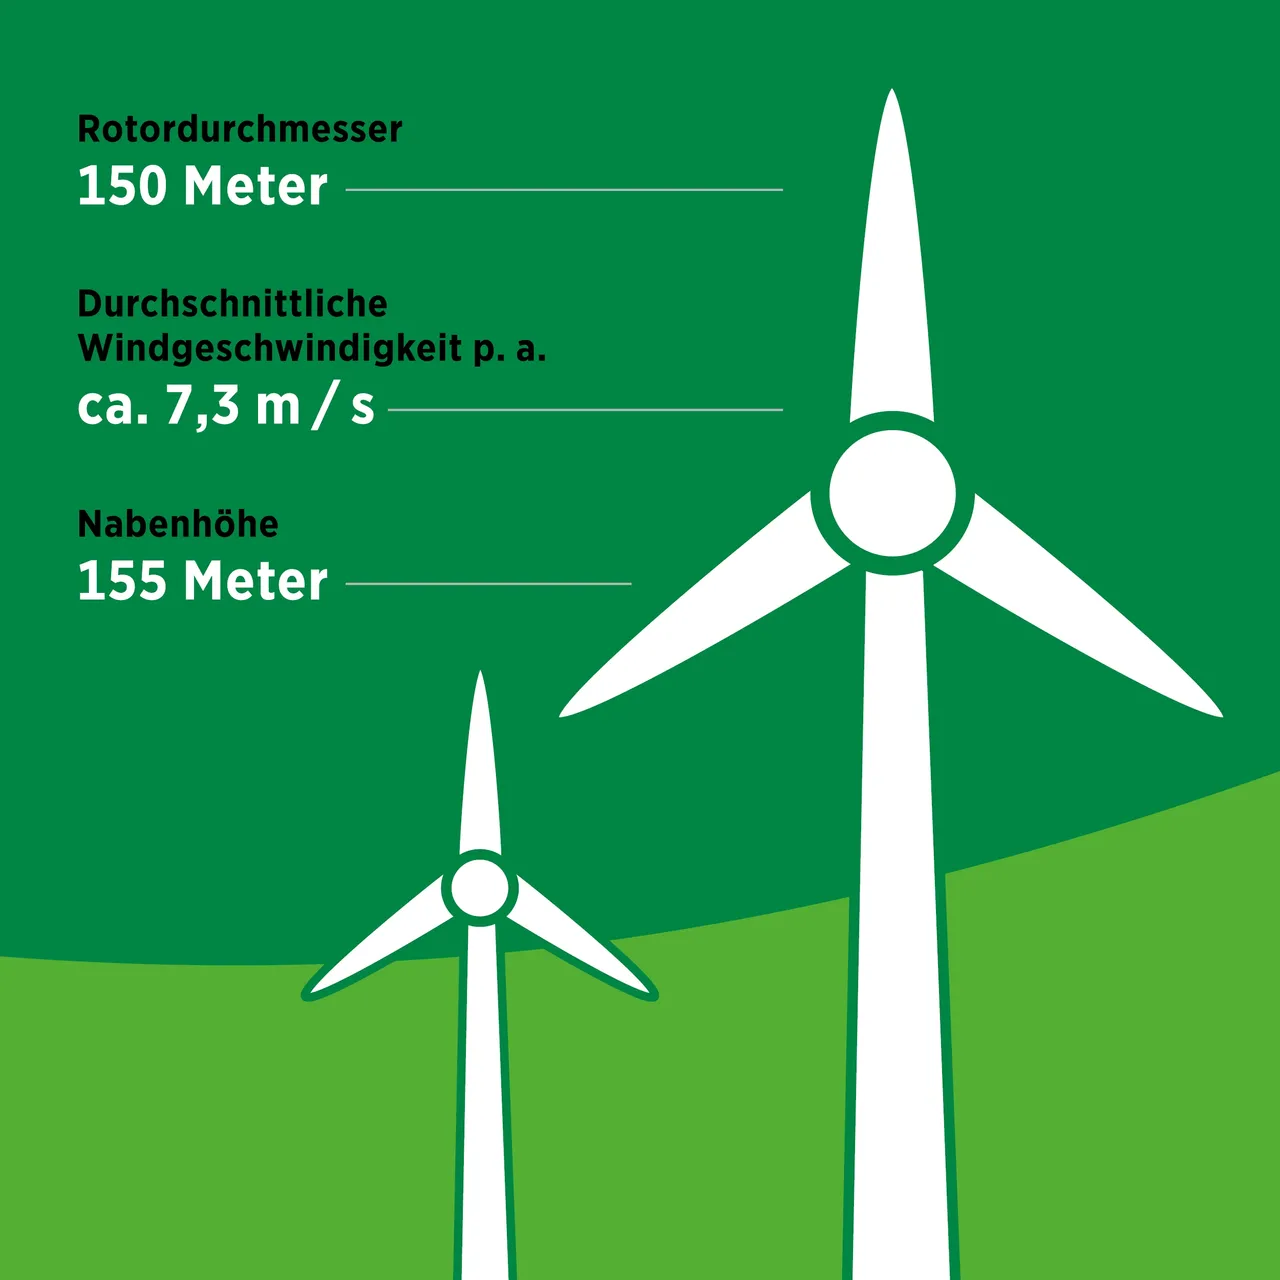 klimaVest:
  technische Daten zu einem Windrad im Kuuronkallio Windpark. Der
  Rotordurchmesser beträgt 150 Meter, die durchschnittliche Windgeschwindigkeit
  circa 7,3 Meter in der Sekunde bei einer Nabenhöhe von 155 Meter.